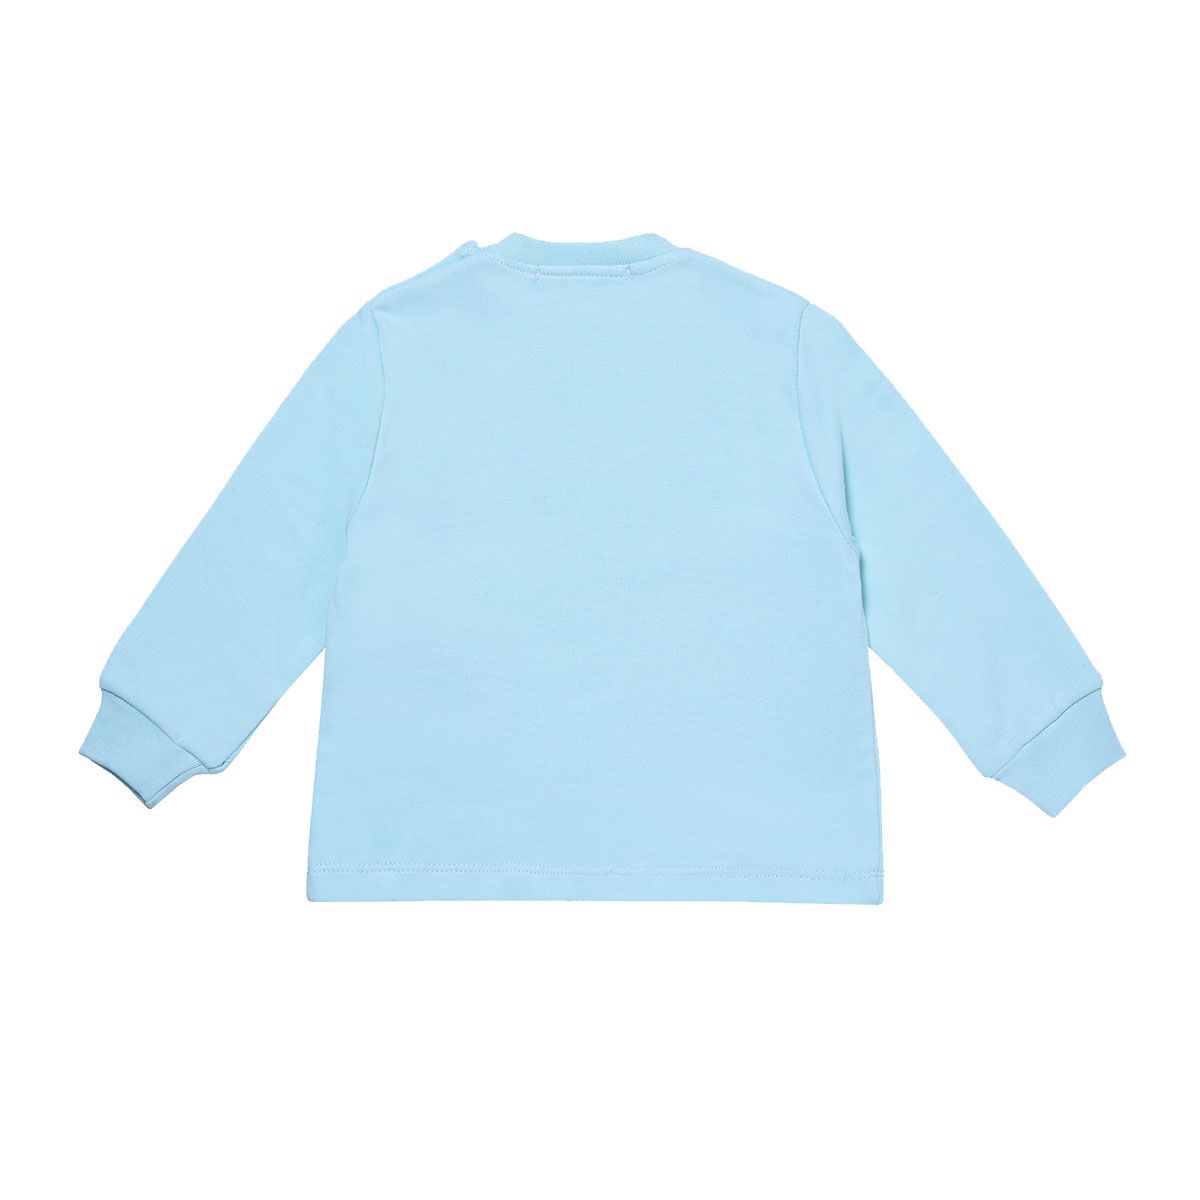 ست تی شرت و شلوار نوزادی فیورلا مدل لاما کد 21518 -  - 4